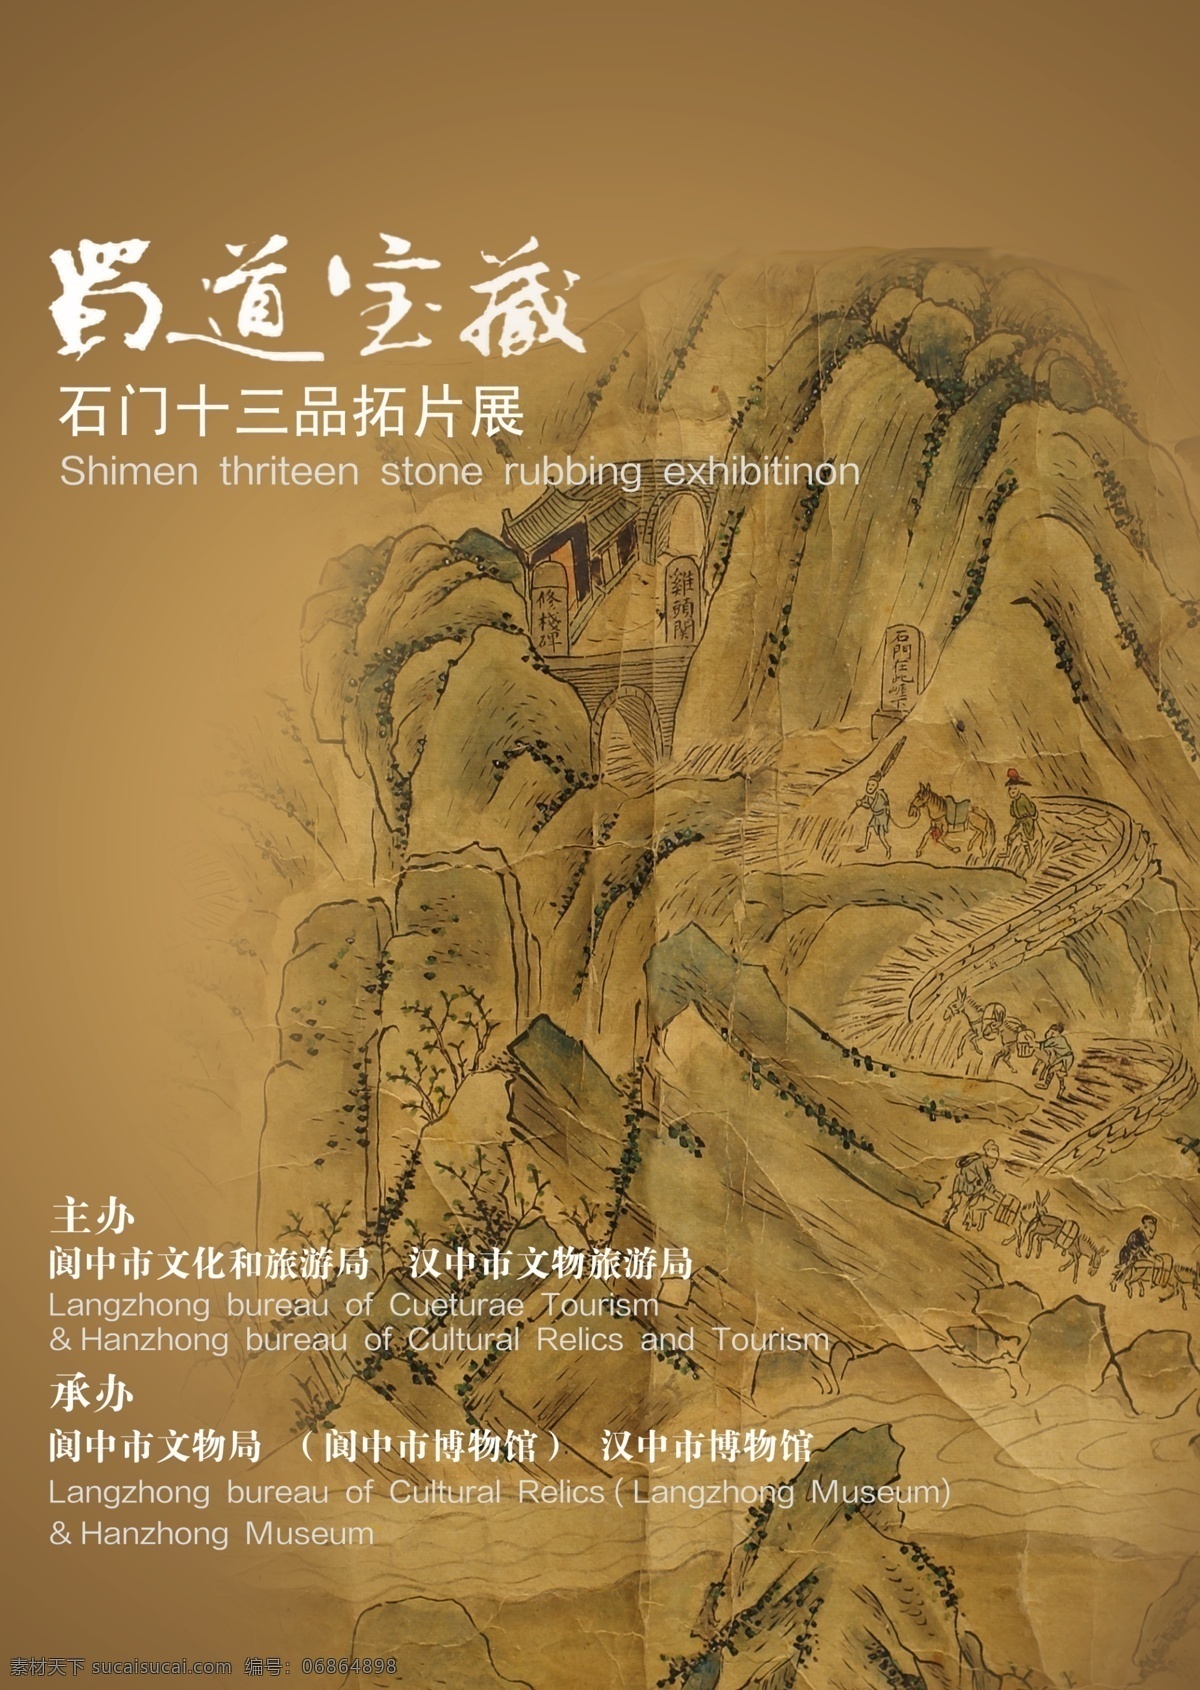 阆中市博物馆 蜀道 宝藏 博物馆 博物馆海报 博物馆宣传画 展板模板